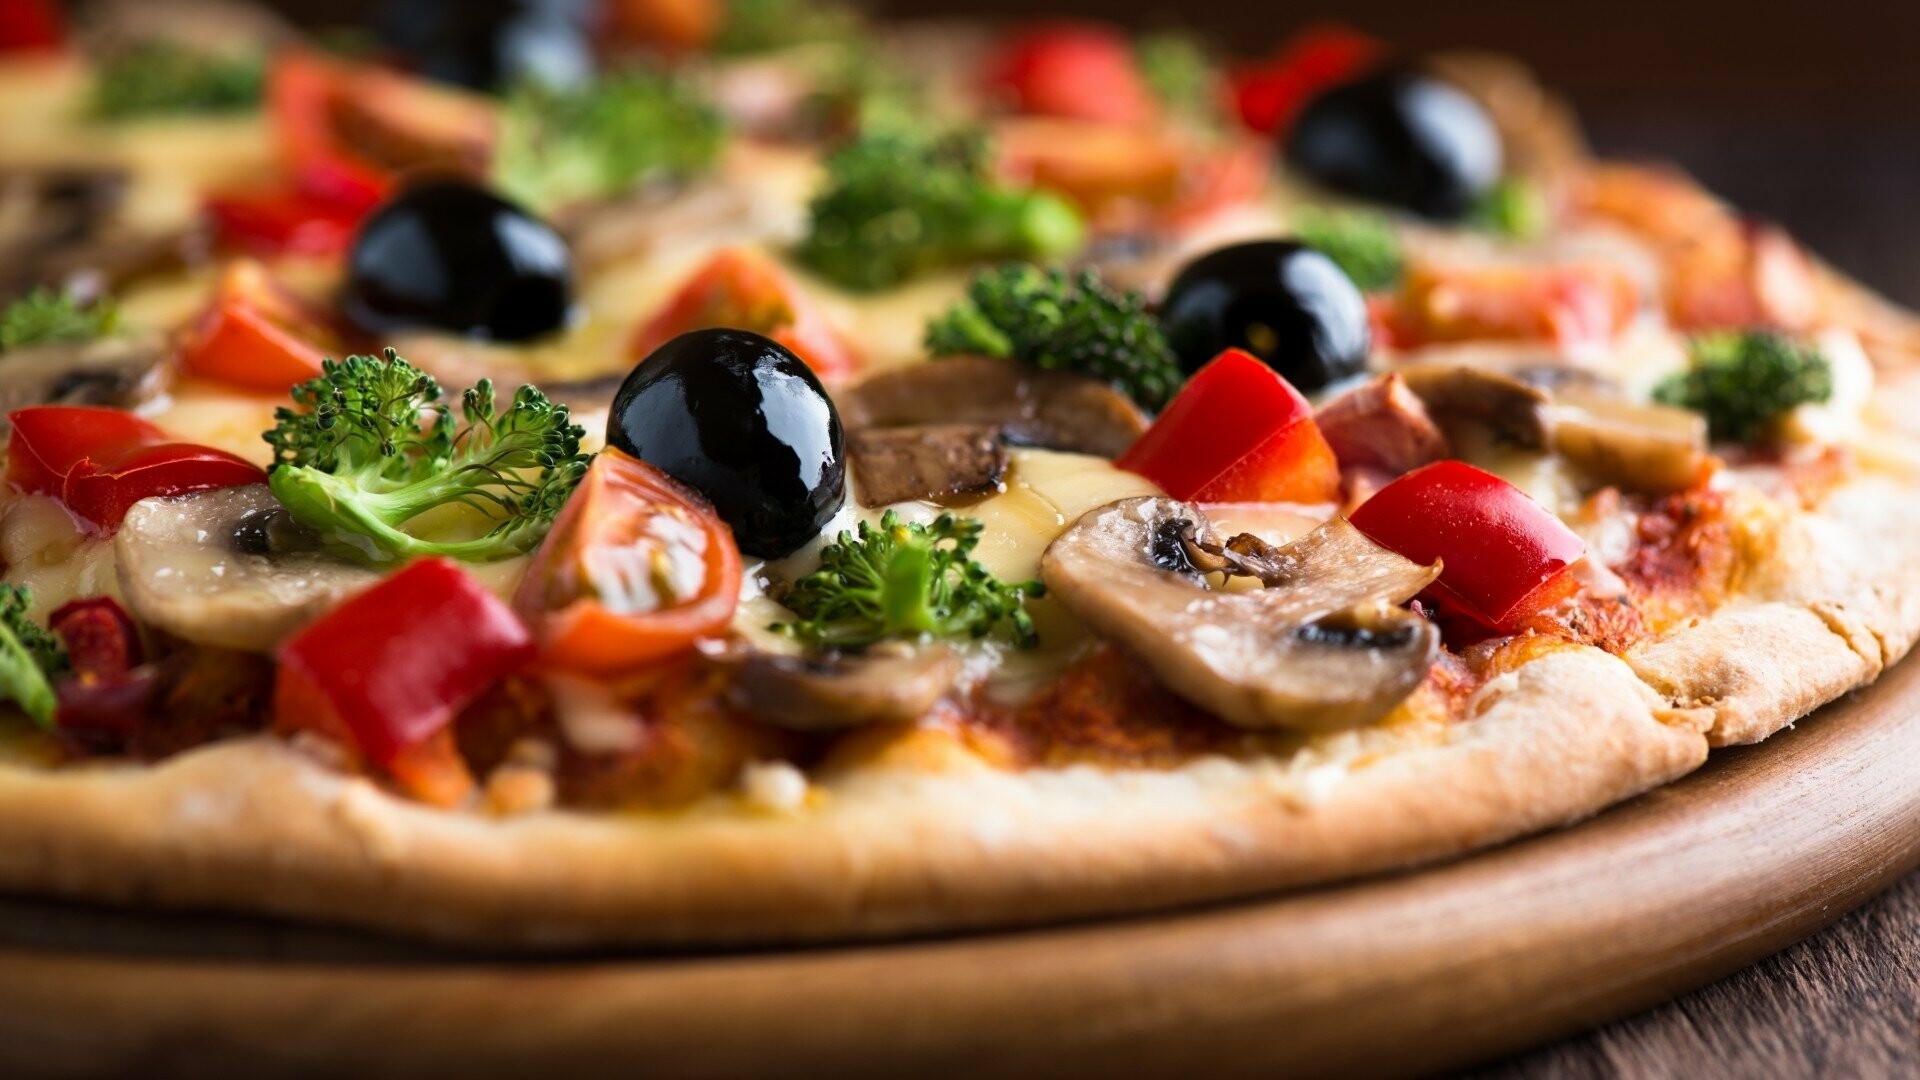 Pizza: Capricciosa, Tomato sauce, mushrooms, mozzarella cheese, black olives, ham. 1920x1080 Full HD Background.